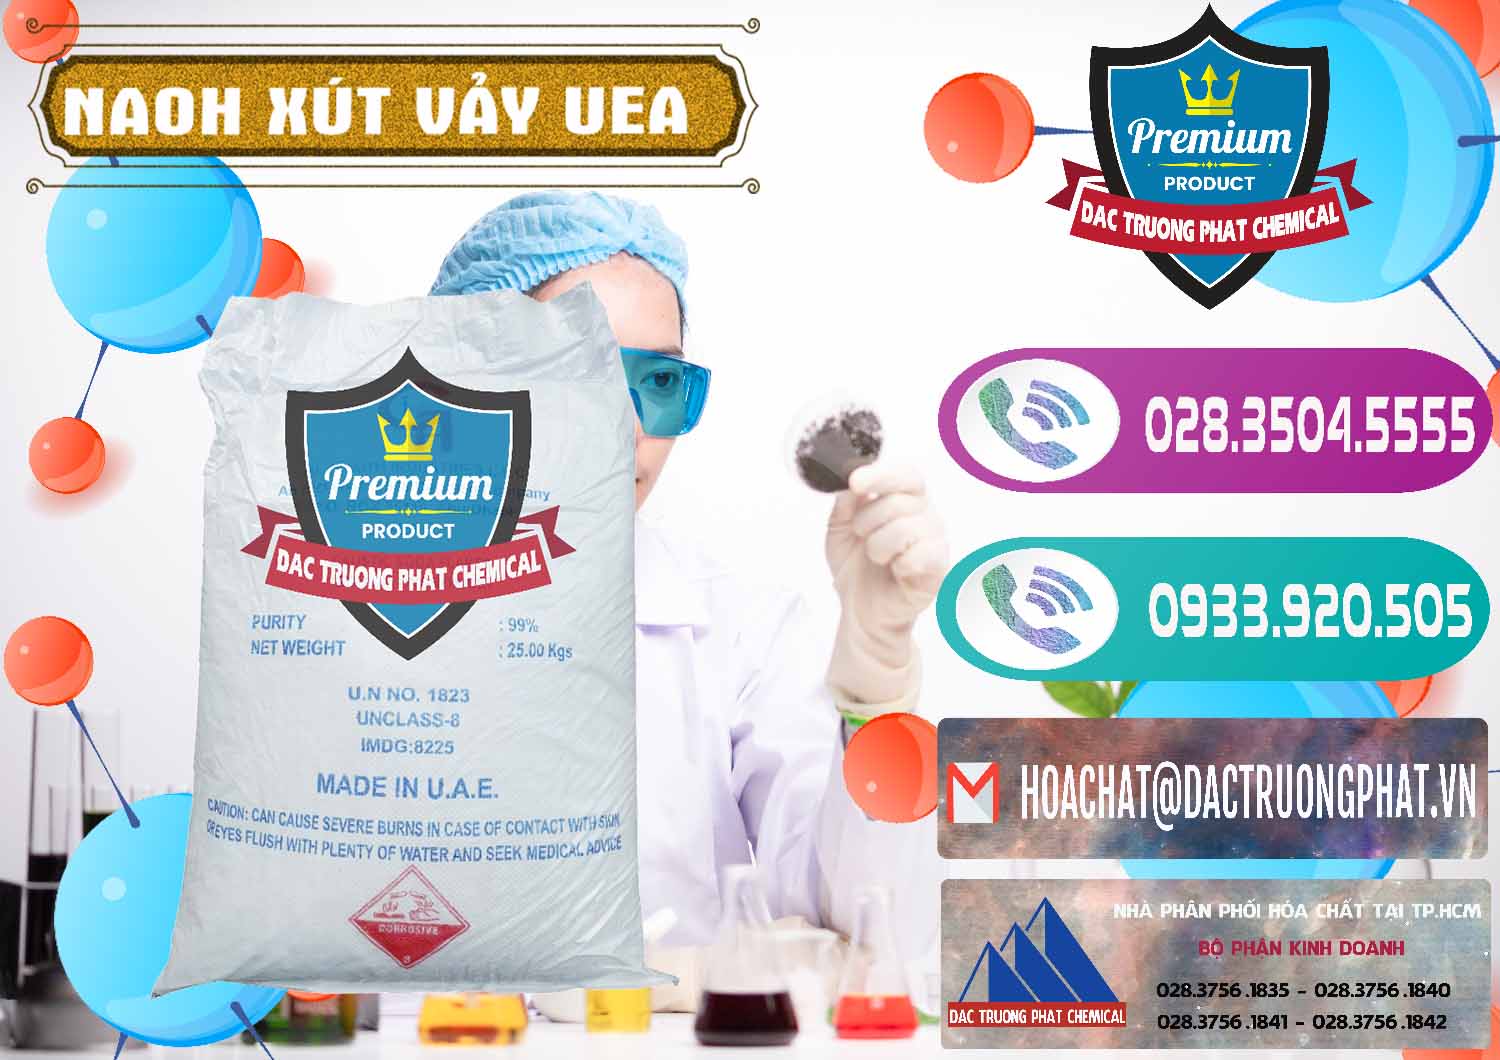 Chuyên bán ( cung ứng ) Xút Vảy - NaOH Vảy UAE Iran - 0432 - Chuyên phân phối & cung ứng hóa chất tại TP.HCM - hoachatxulynuoc.com